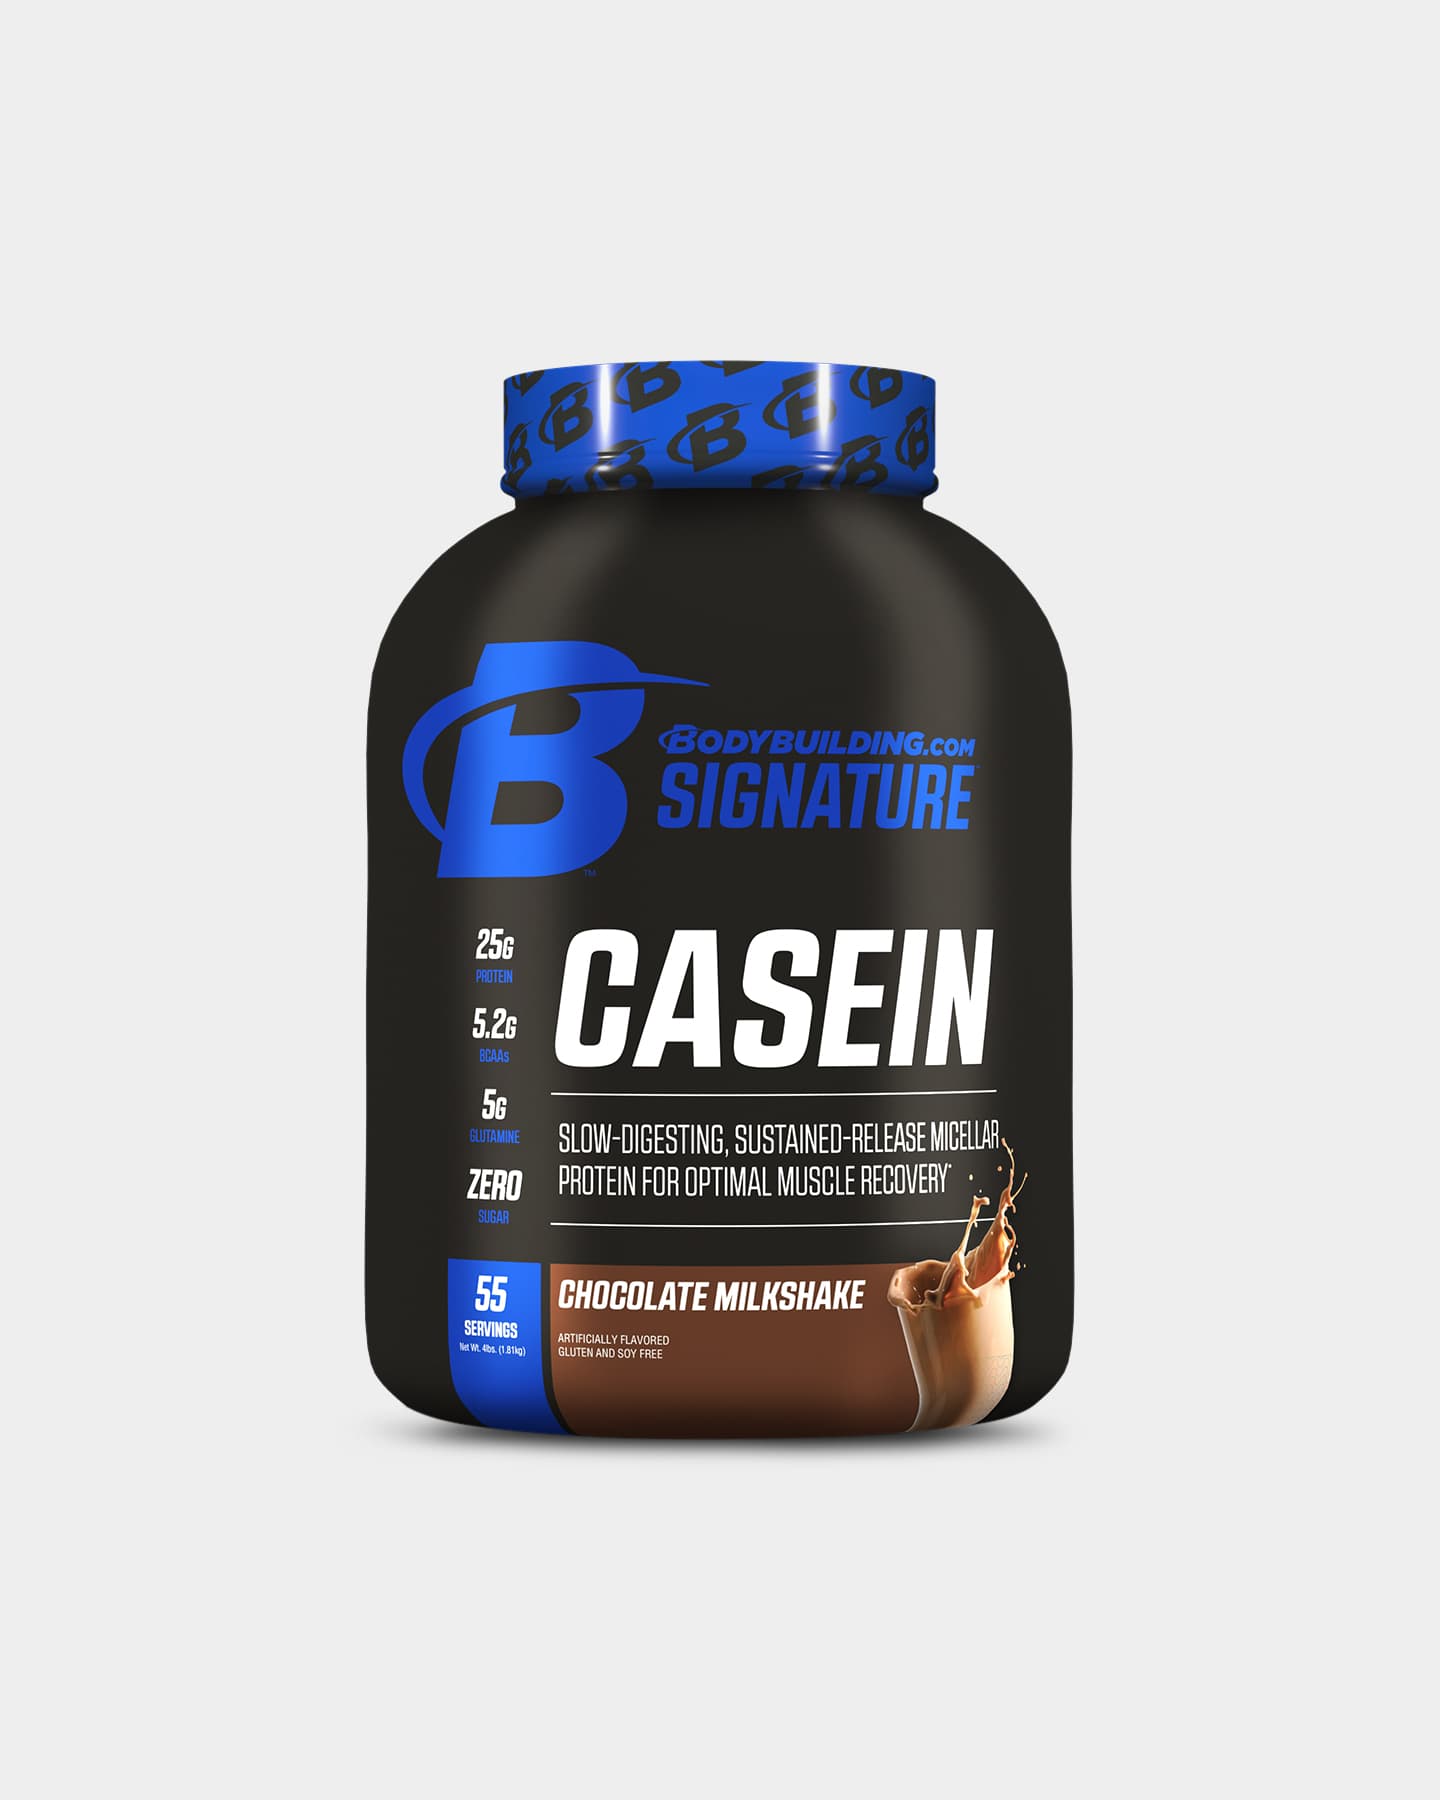 Image of Bodybuilding.com Signature Casein Protein